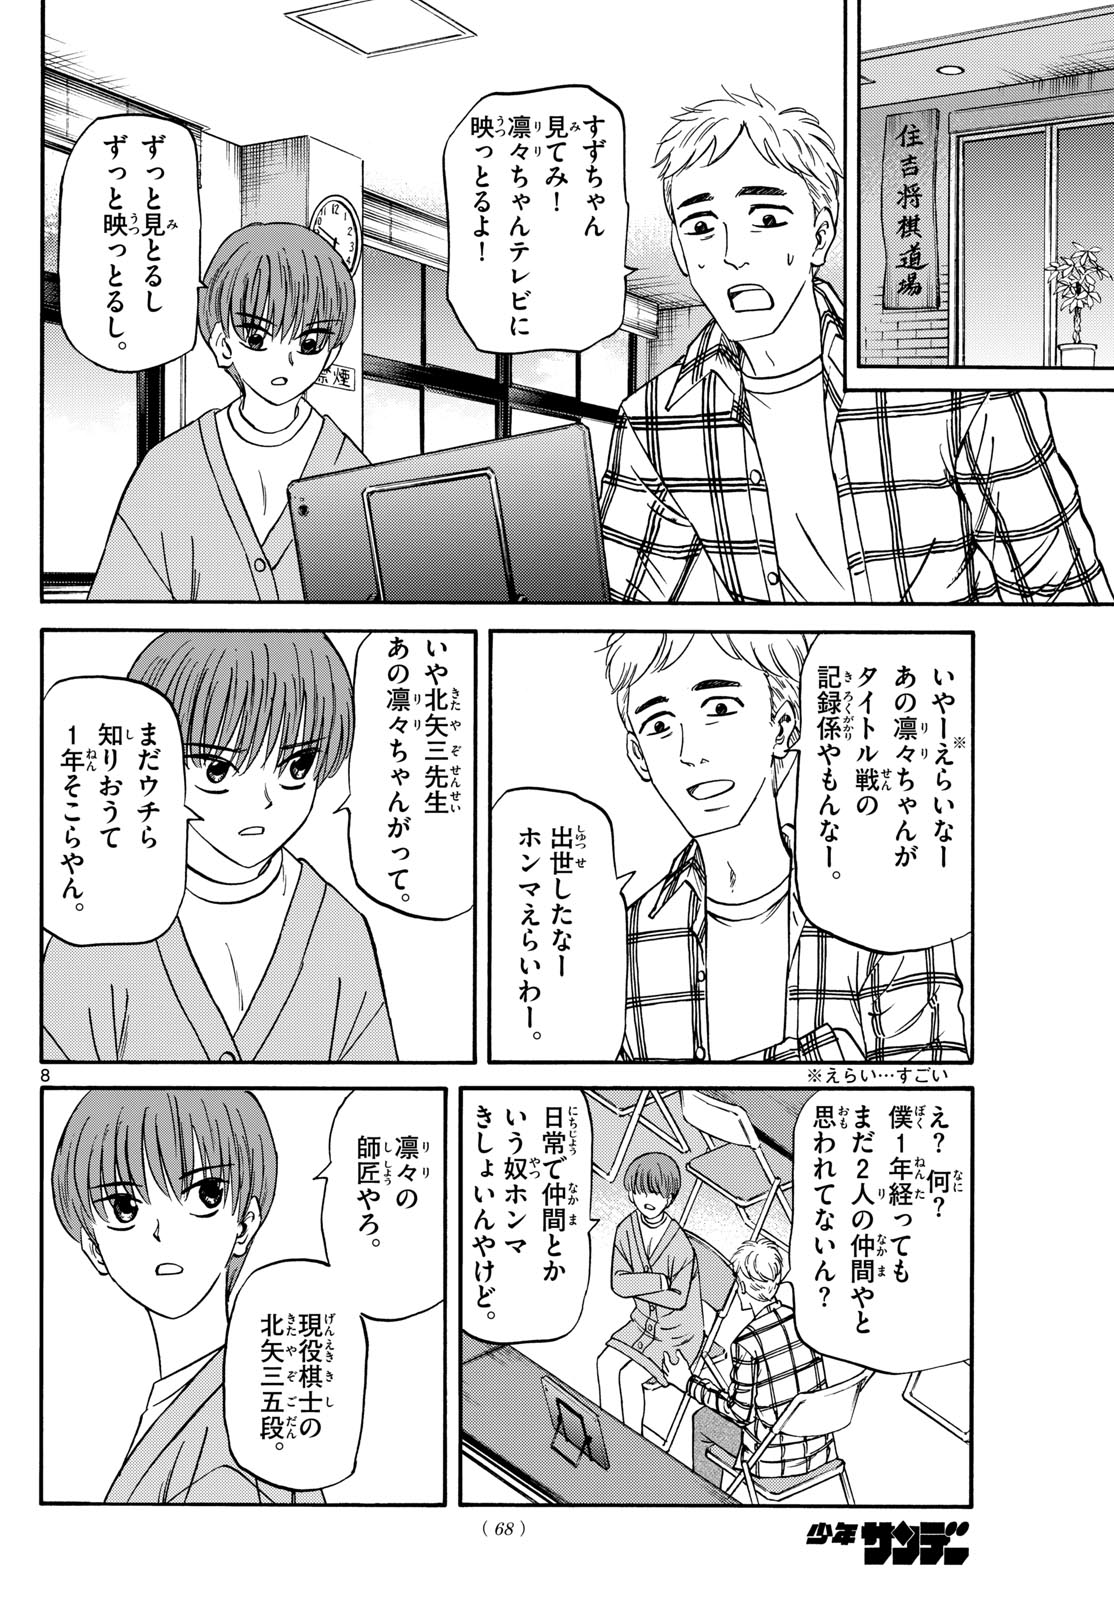 Tatsu to Ichigo - Chapter 169 - Page 8